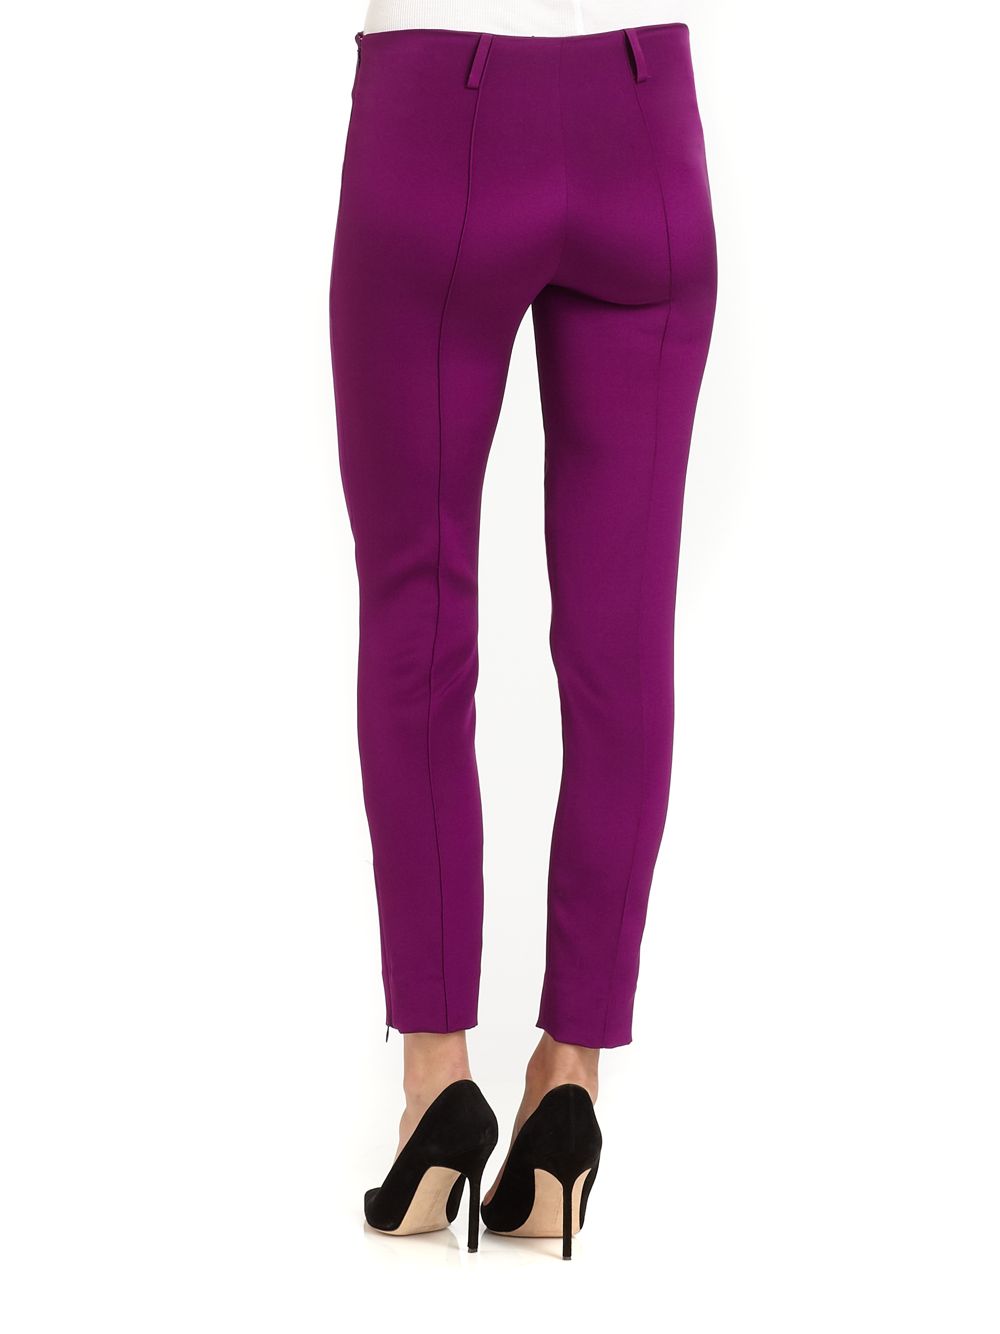 Lyst - Sophie theallet Silk Crepe Pants in Purple